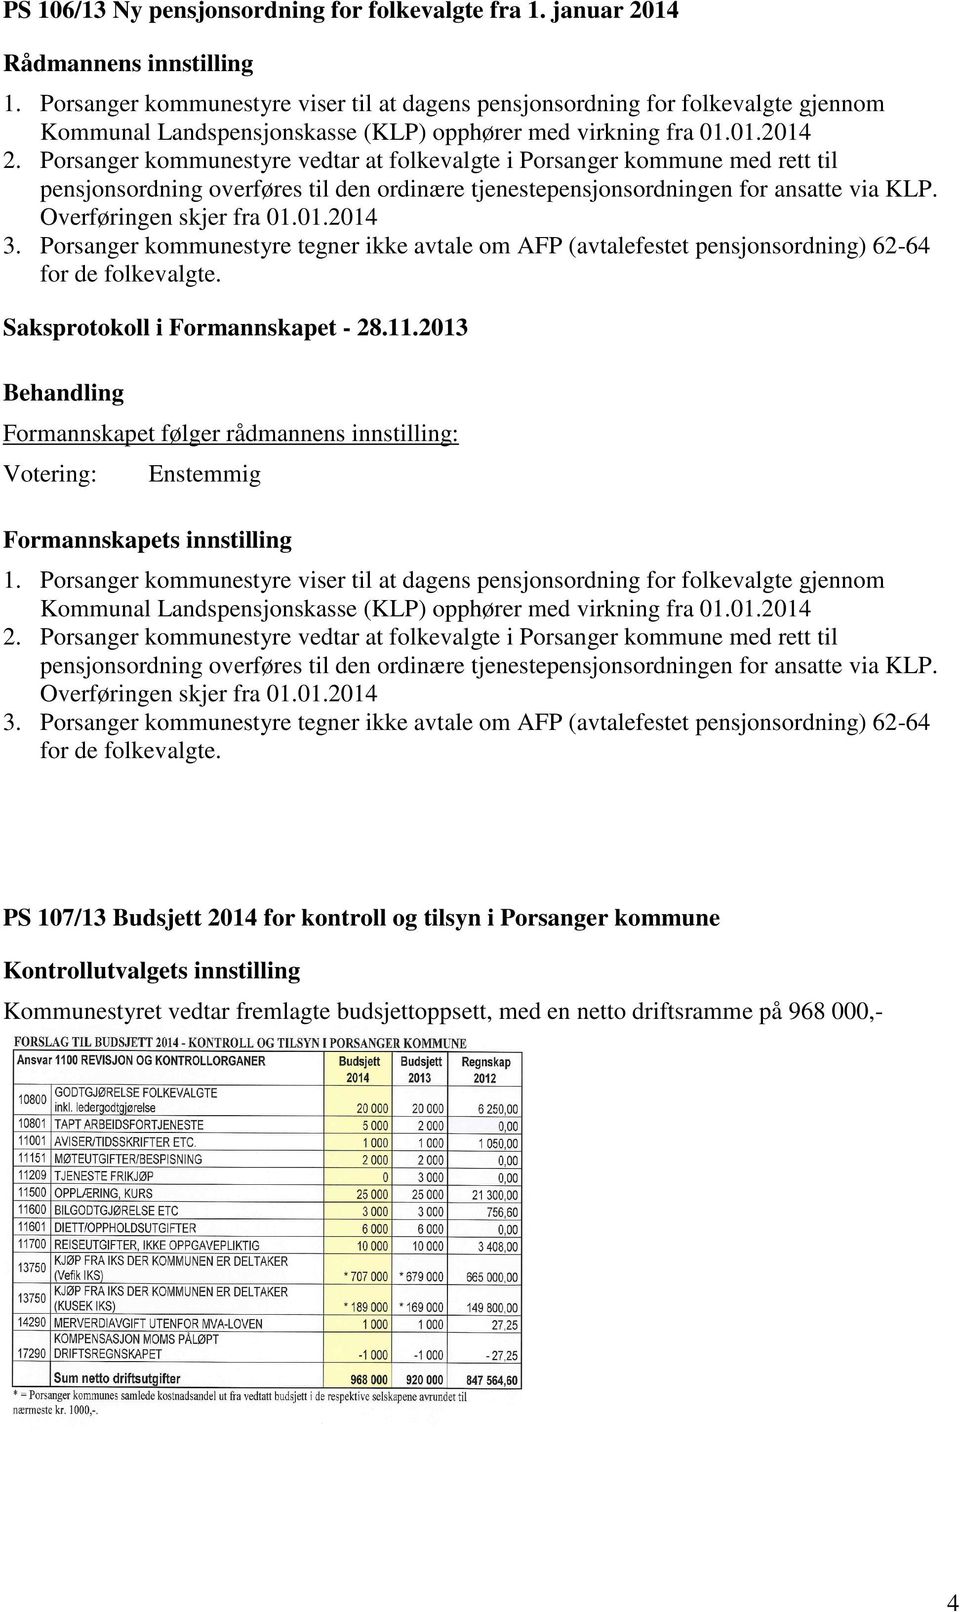 Porsanger kommunestyre vedtar at folkevalgte i Porsanger kommune med rett til pensjonsordning overføres til den ordinære tjenestepensjonsordningen for ansatte via KLP. Overføringen skjer fra 01.